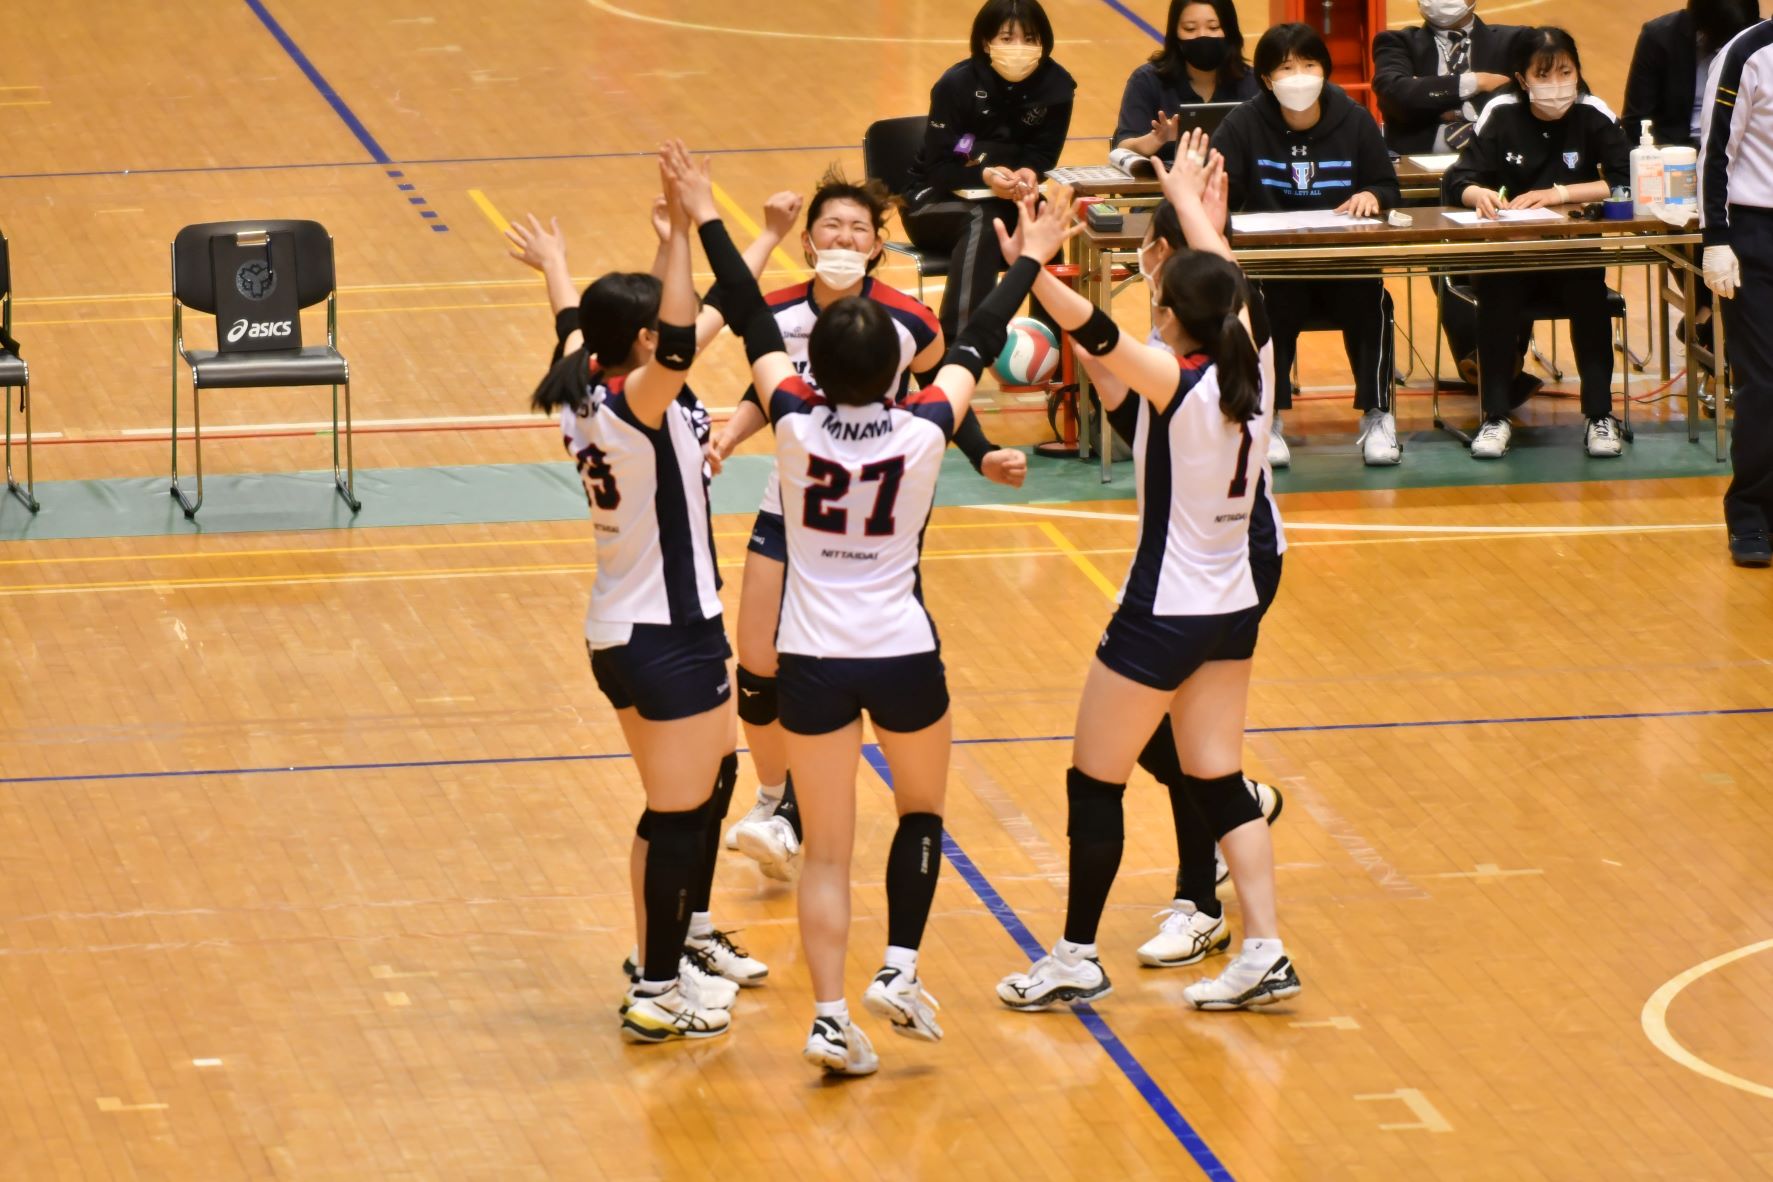 日本体育大学 女子 バレーボール部 ユニフォーム - その他スポーツ